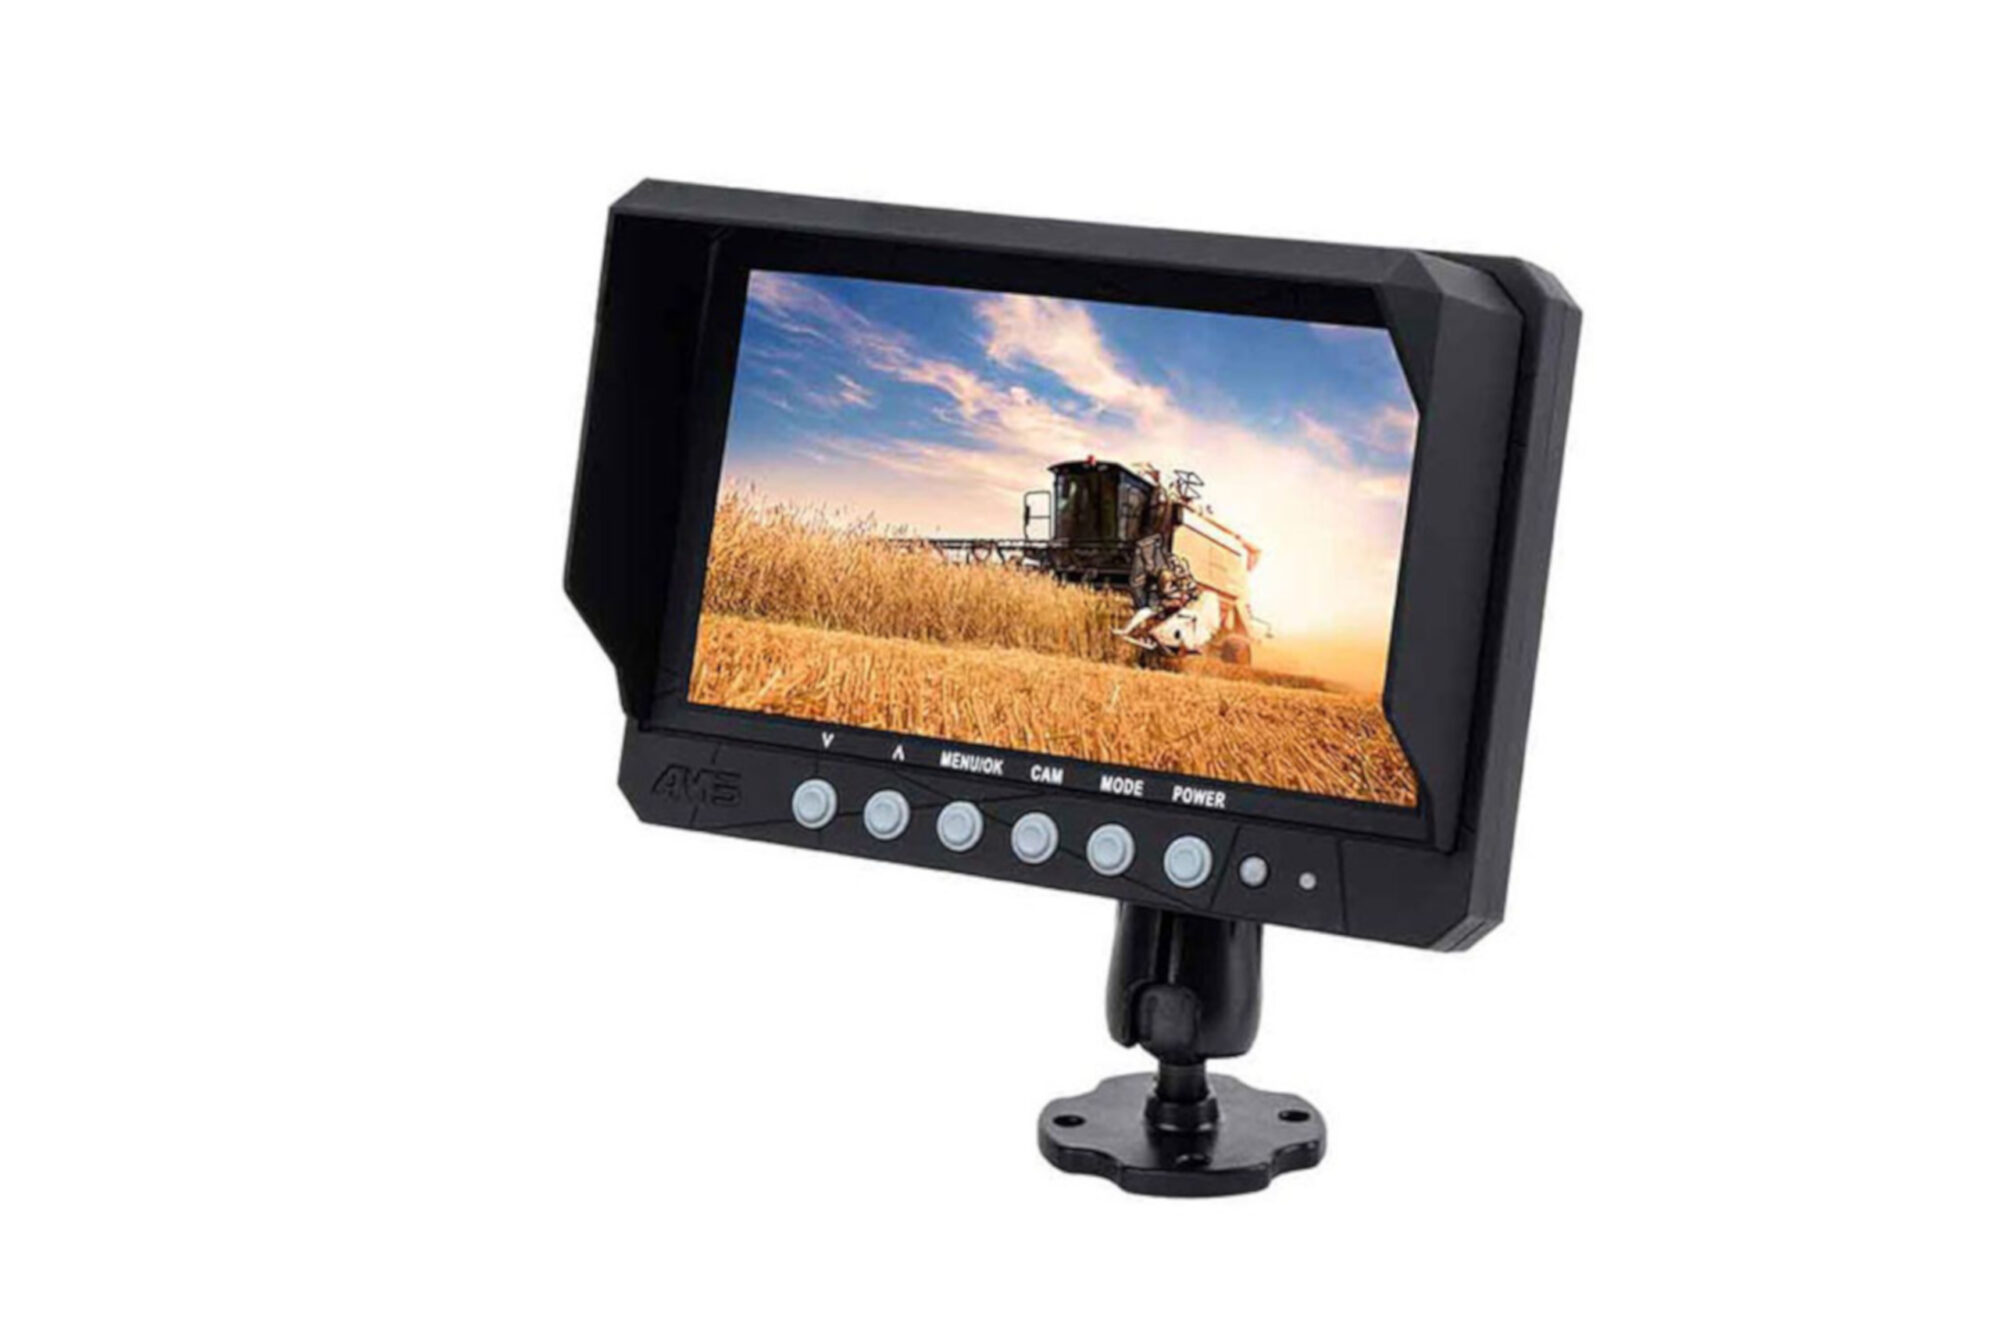 Kit Caméra de Recul et Moniteur Filaire, 7 Pouces écran LCD TFT et Caméra  de Recul